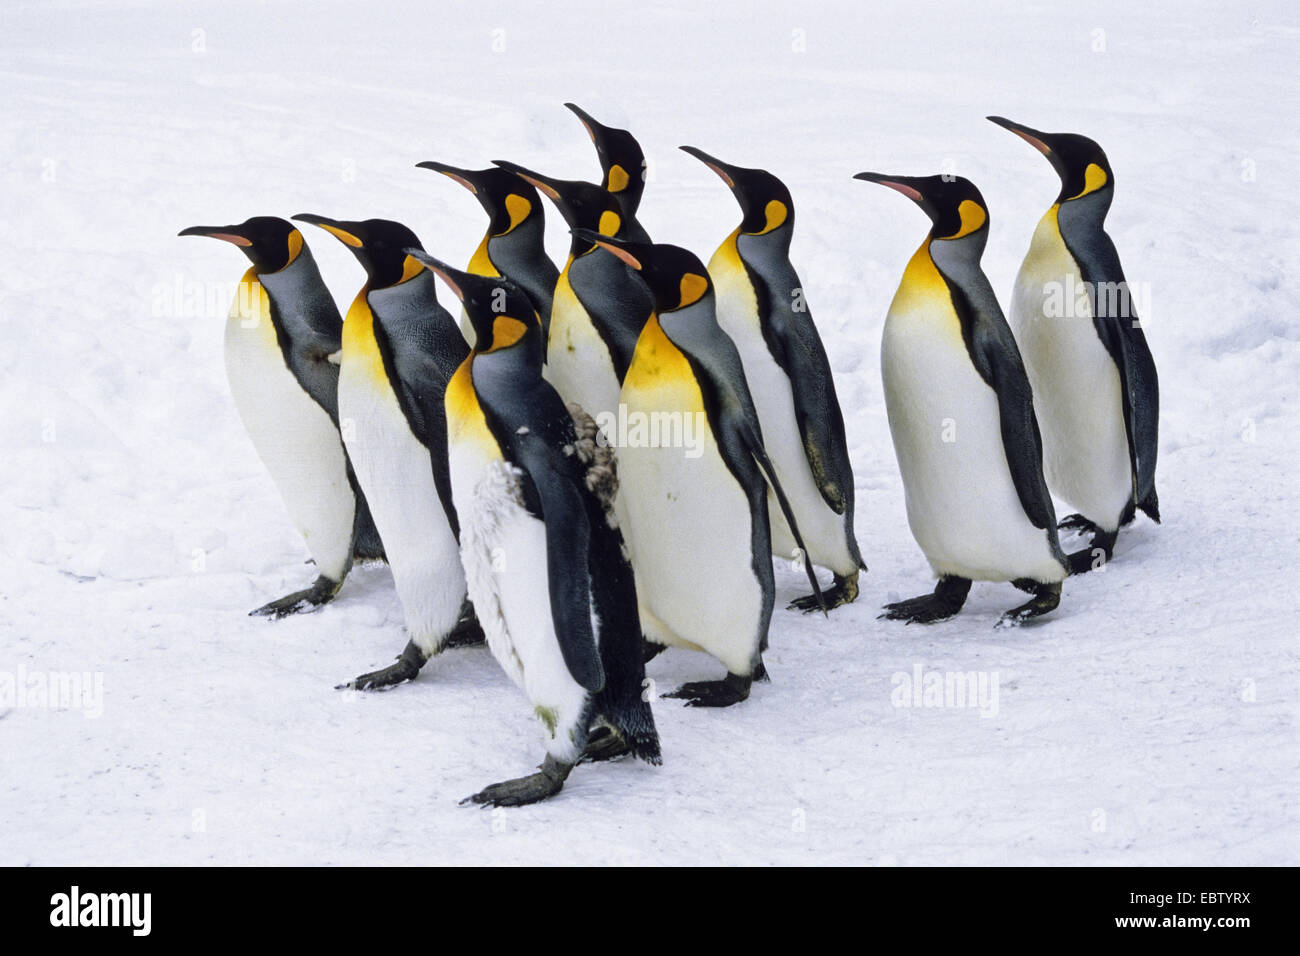 Manchot royal (Aptenodytes patagonicus), groupe dans la neige, l'Antarctique Banque D'Images